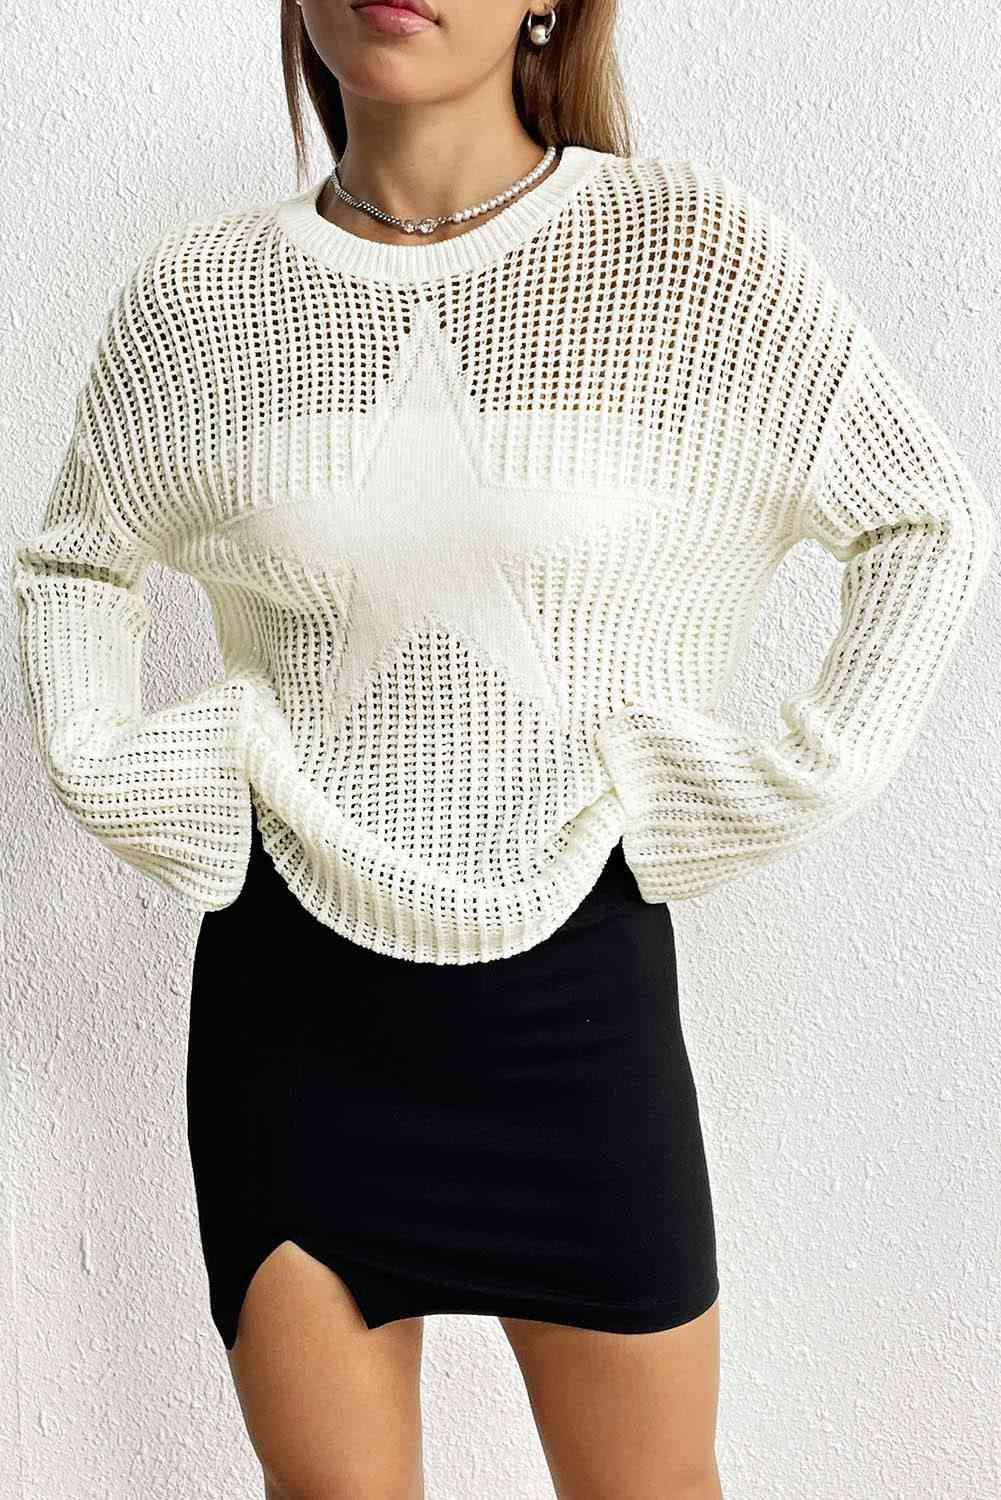 Star Rib-Knit Sweater - Vesteeto